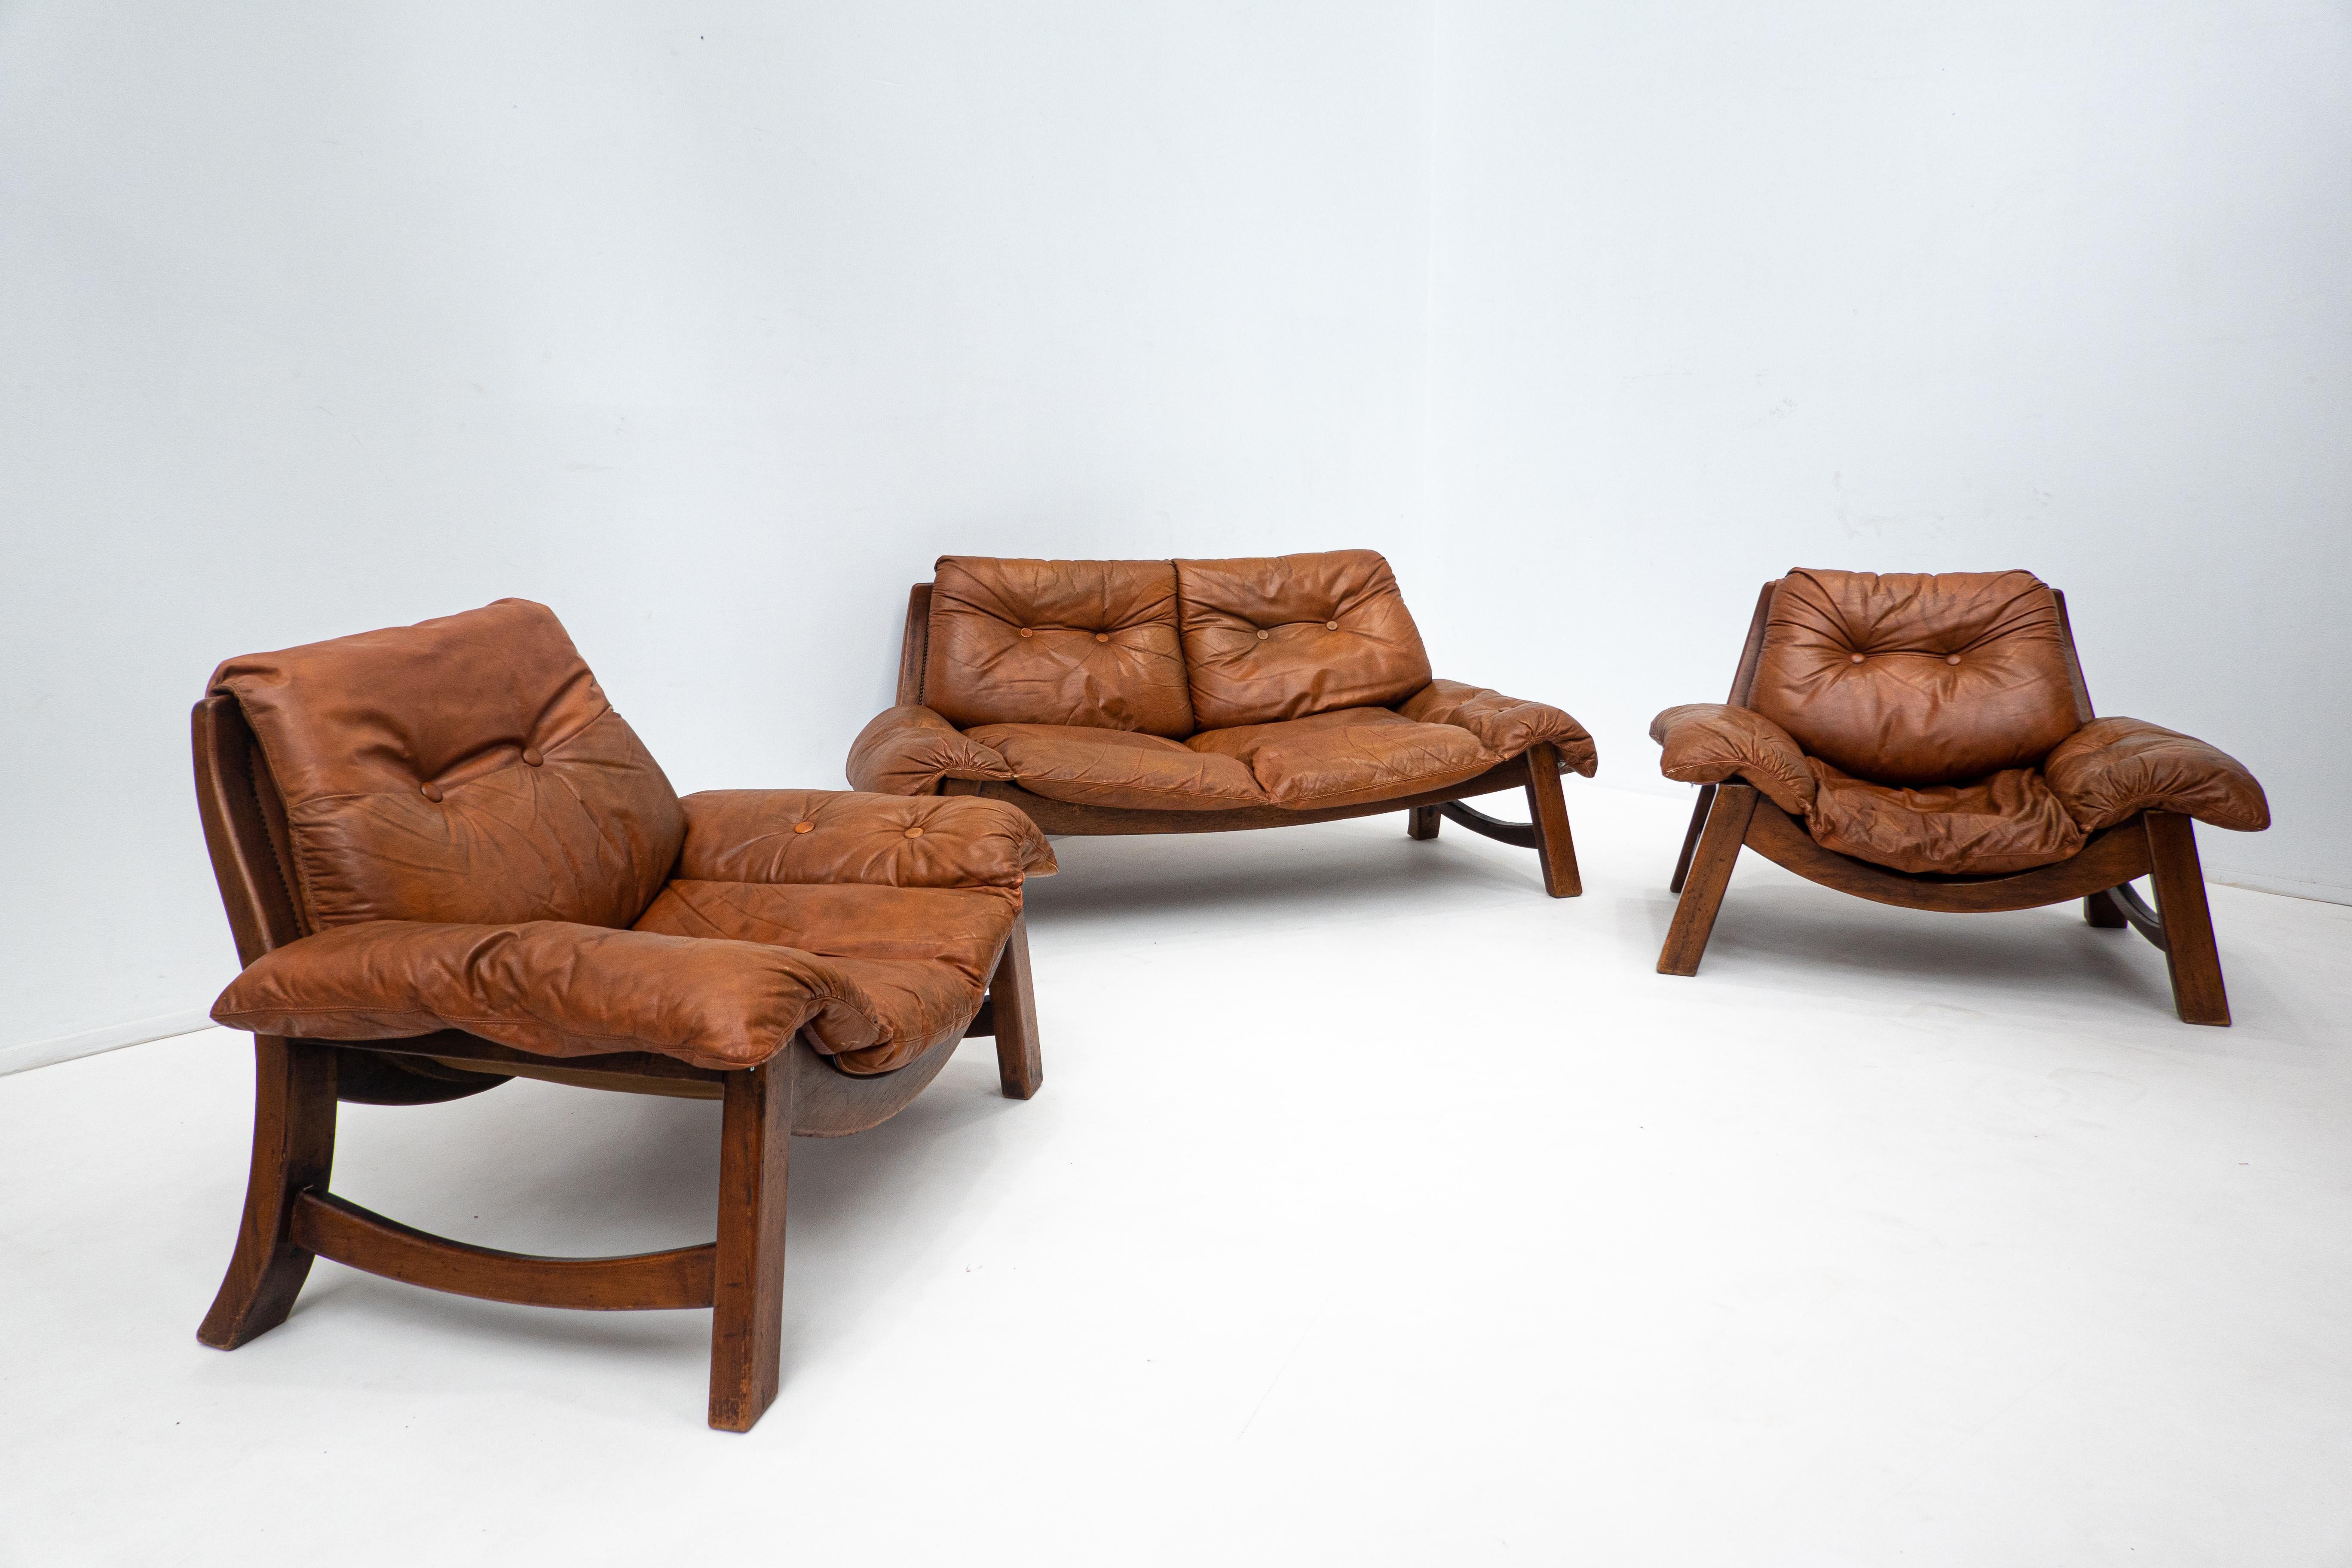 Moderne Wohnzimmergarnitur aus der Jahrhundertmitte, original cognacfarbenes Leder, brasilianischer Stil, 1960er Jahre
Abmessungen: 

Sofa : 170x75x80 cm 

Sessel : 103 x 75 x 80cm